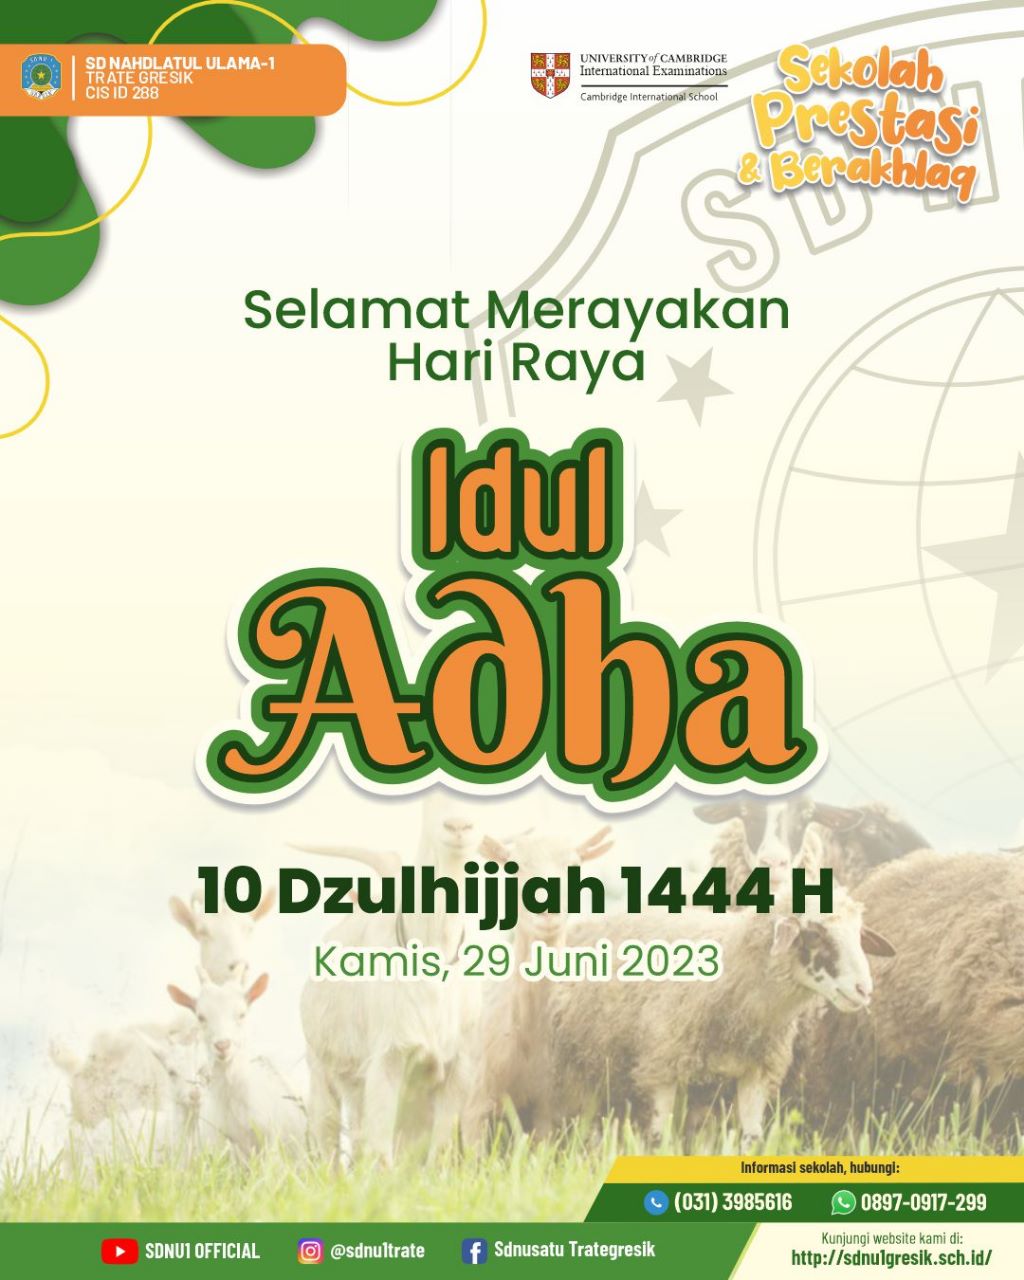 Selamat merayakan Hari Raya Idul Adha 1444H